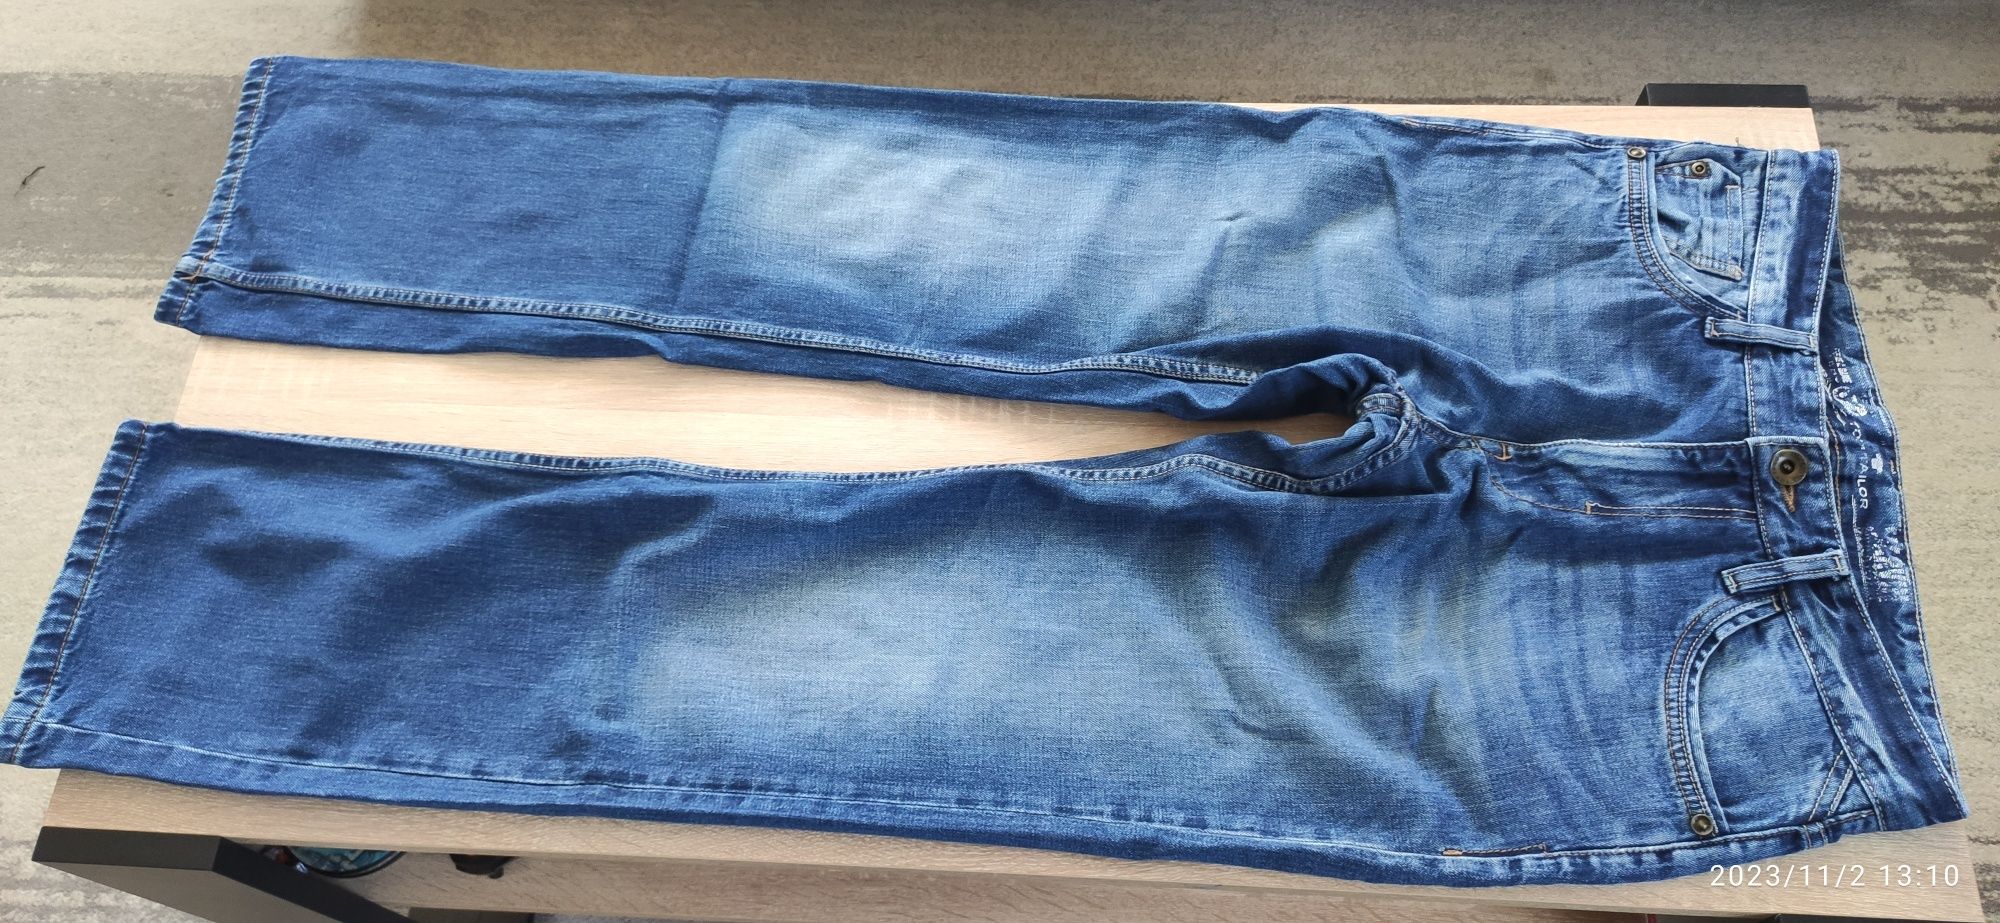 Spodnie jeansowe TOM TAILOR 31/32 proste/straight